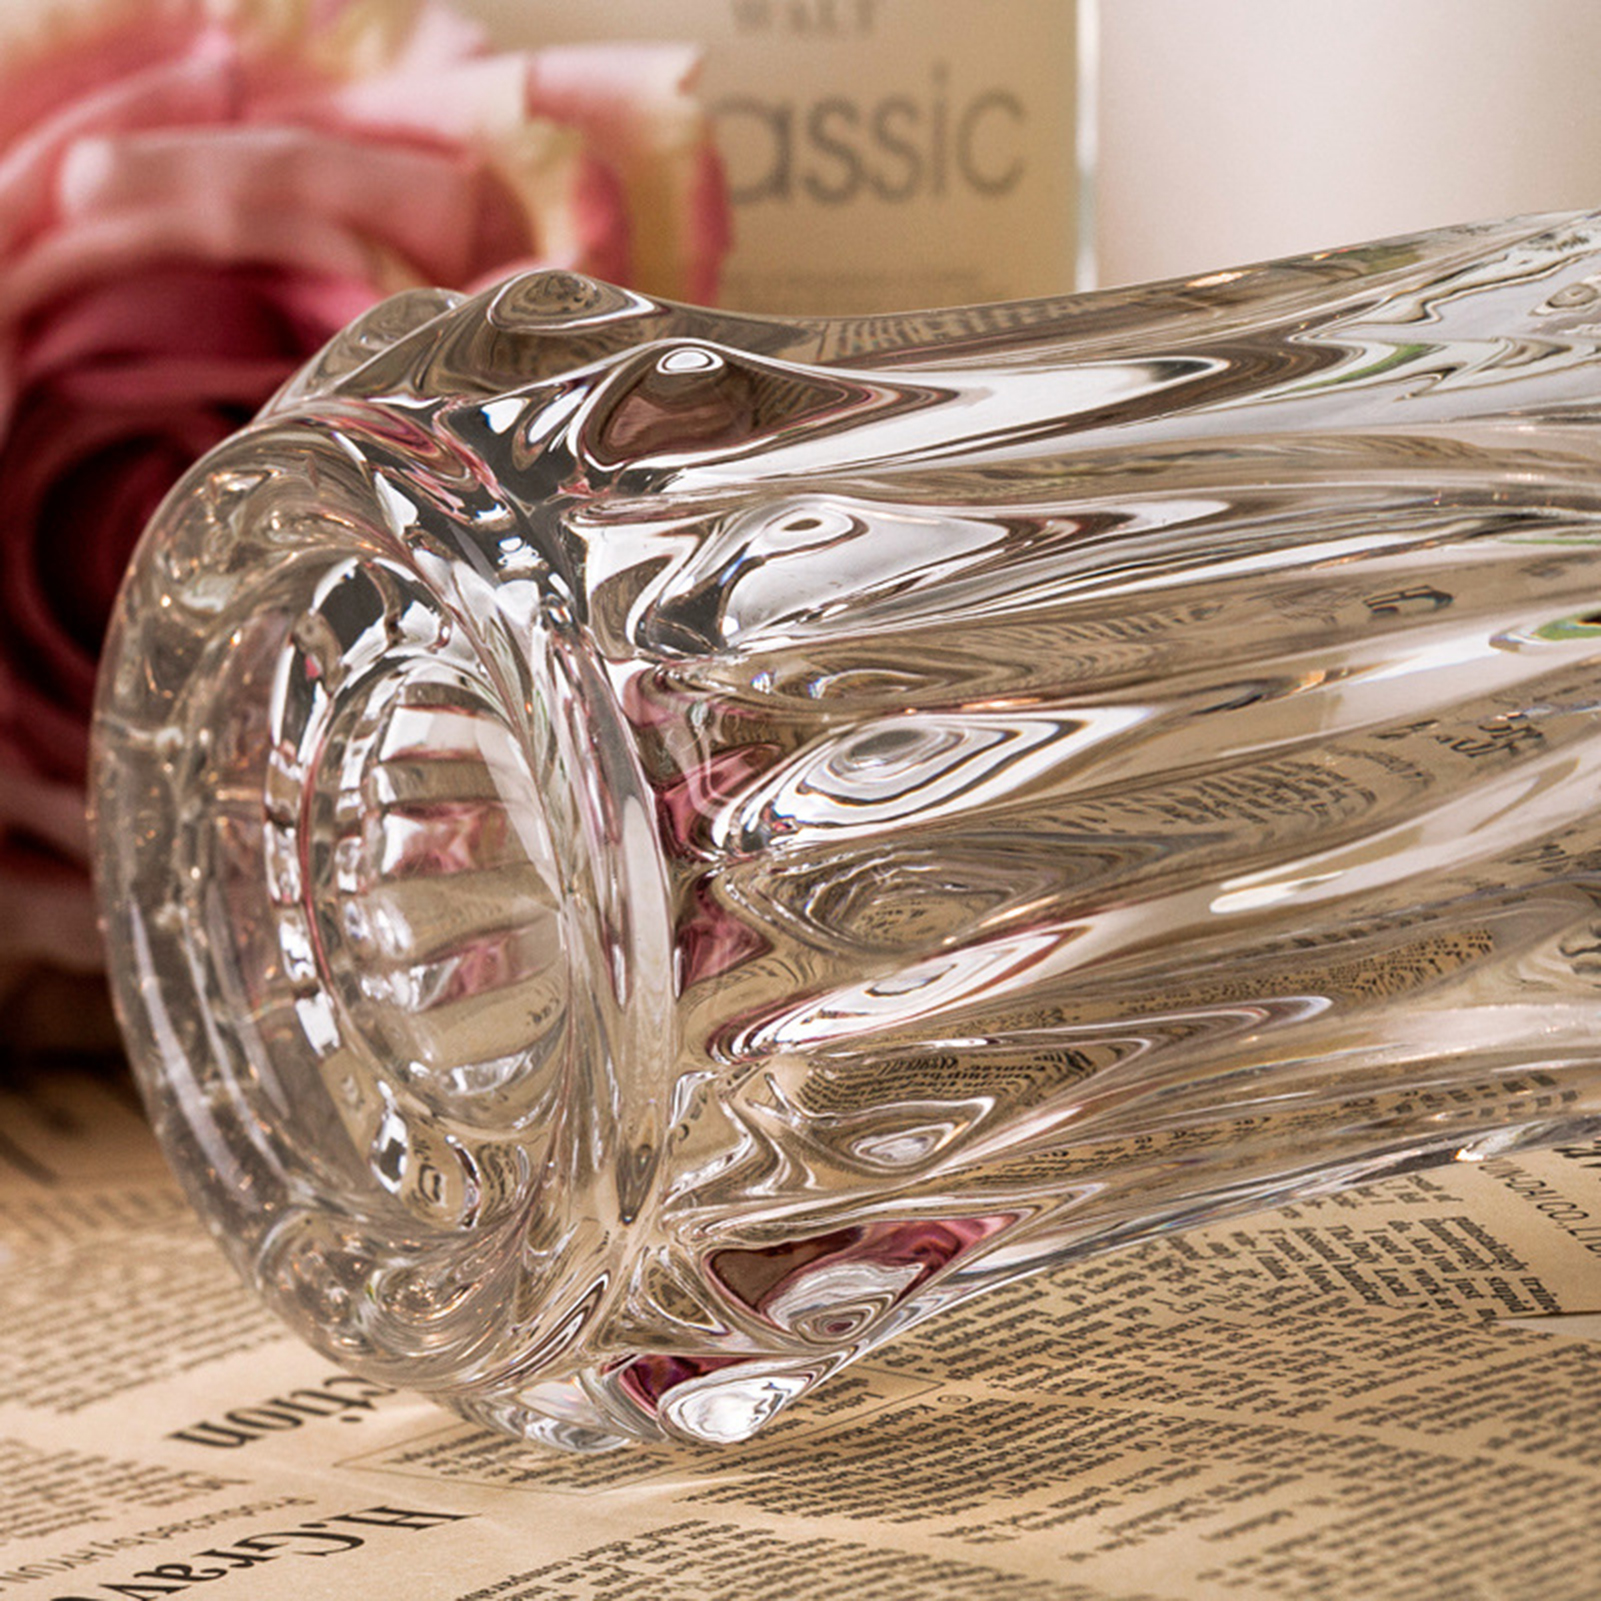 American Wohnzimmer Model Zimmer Hotel handgefertigt Ryukuang Kristallglas Vase Blume Arrangement Dekorative Utensilien und Ornamente